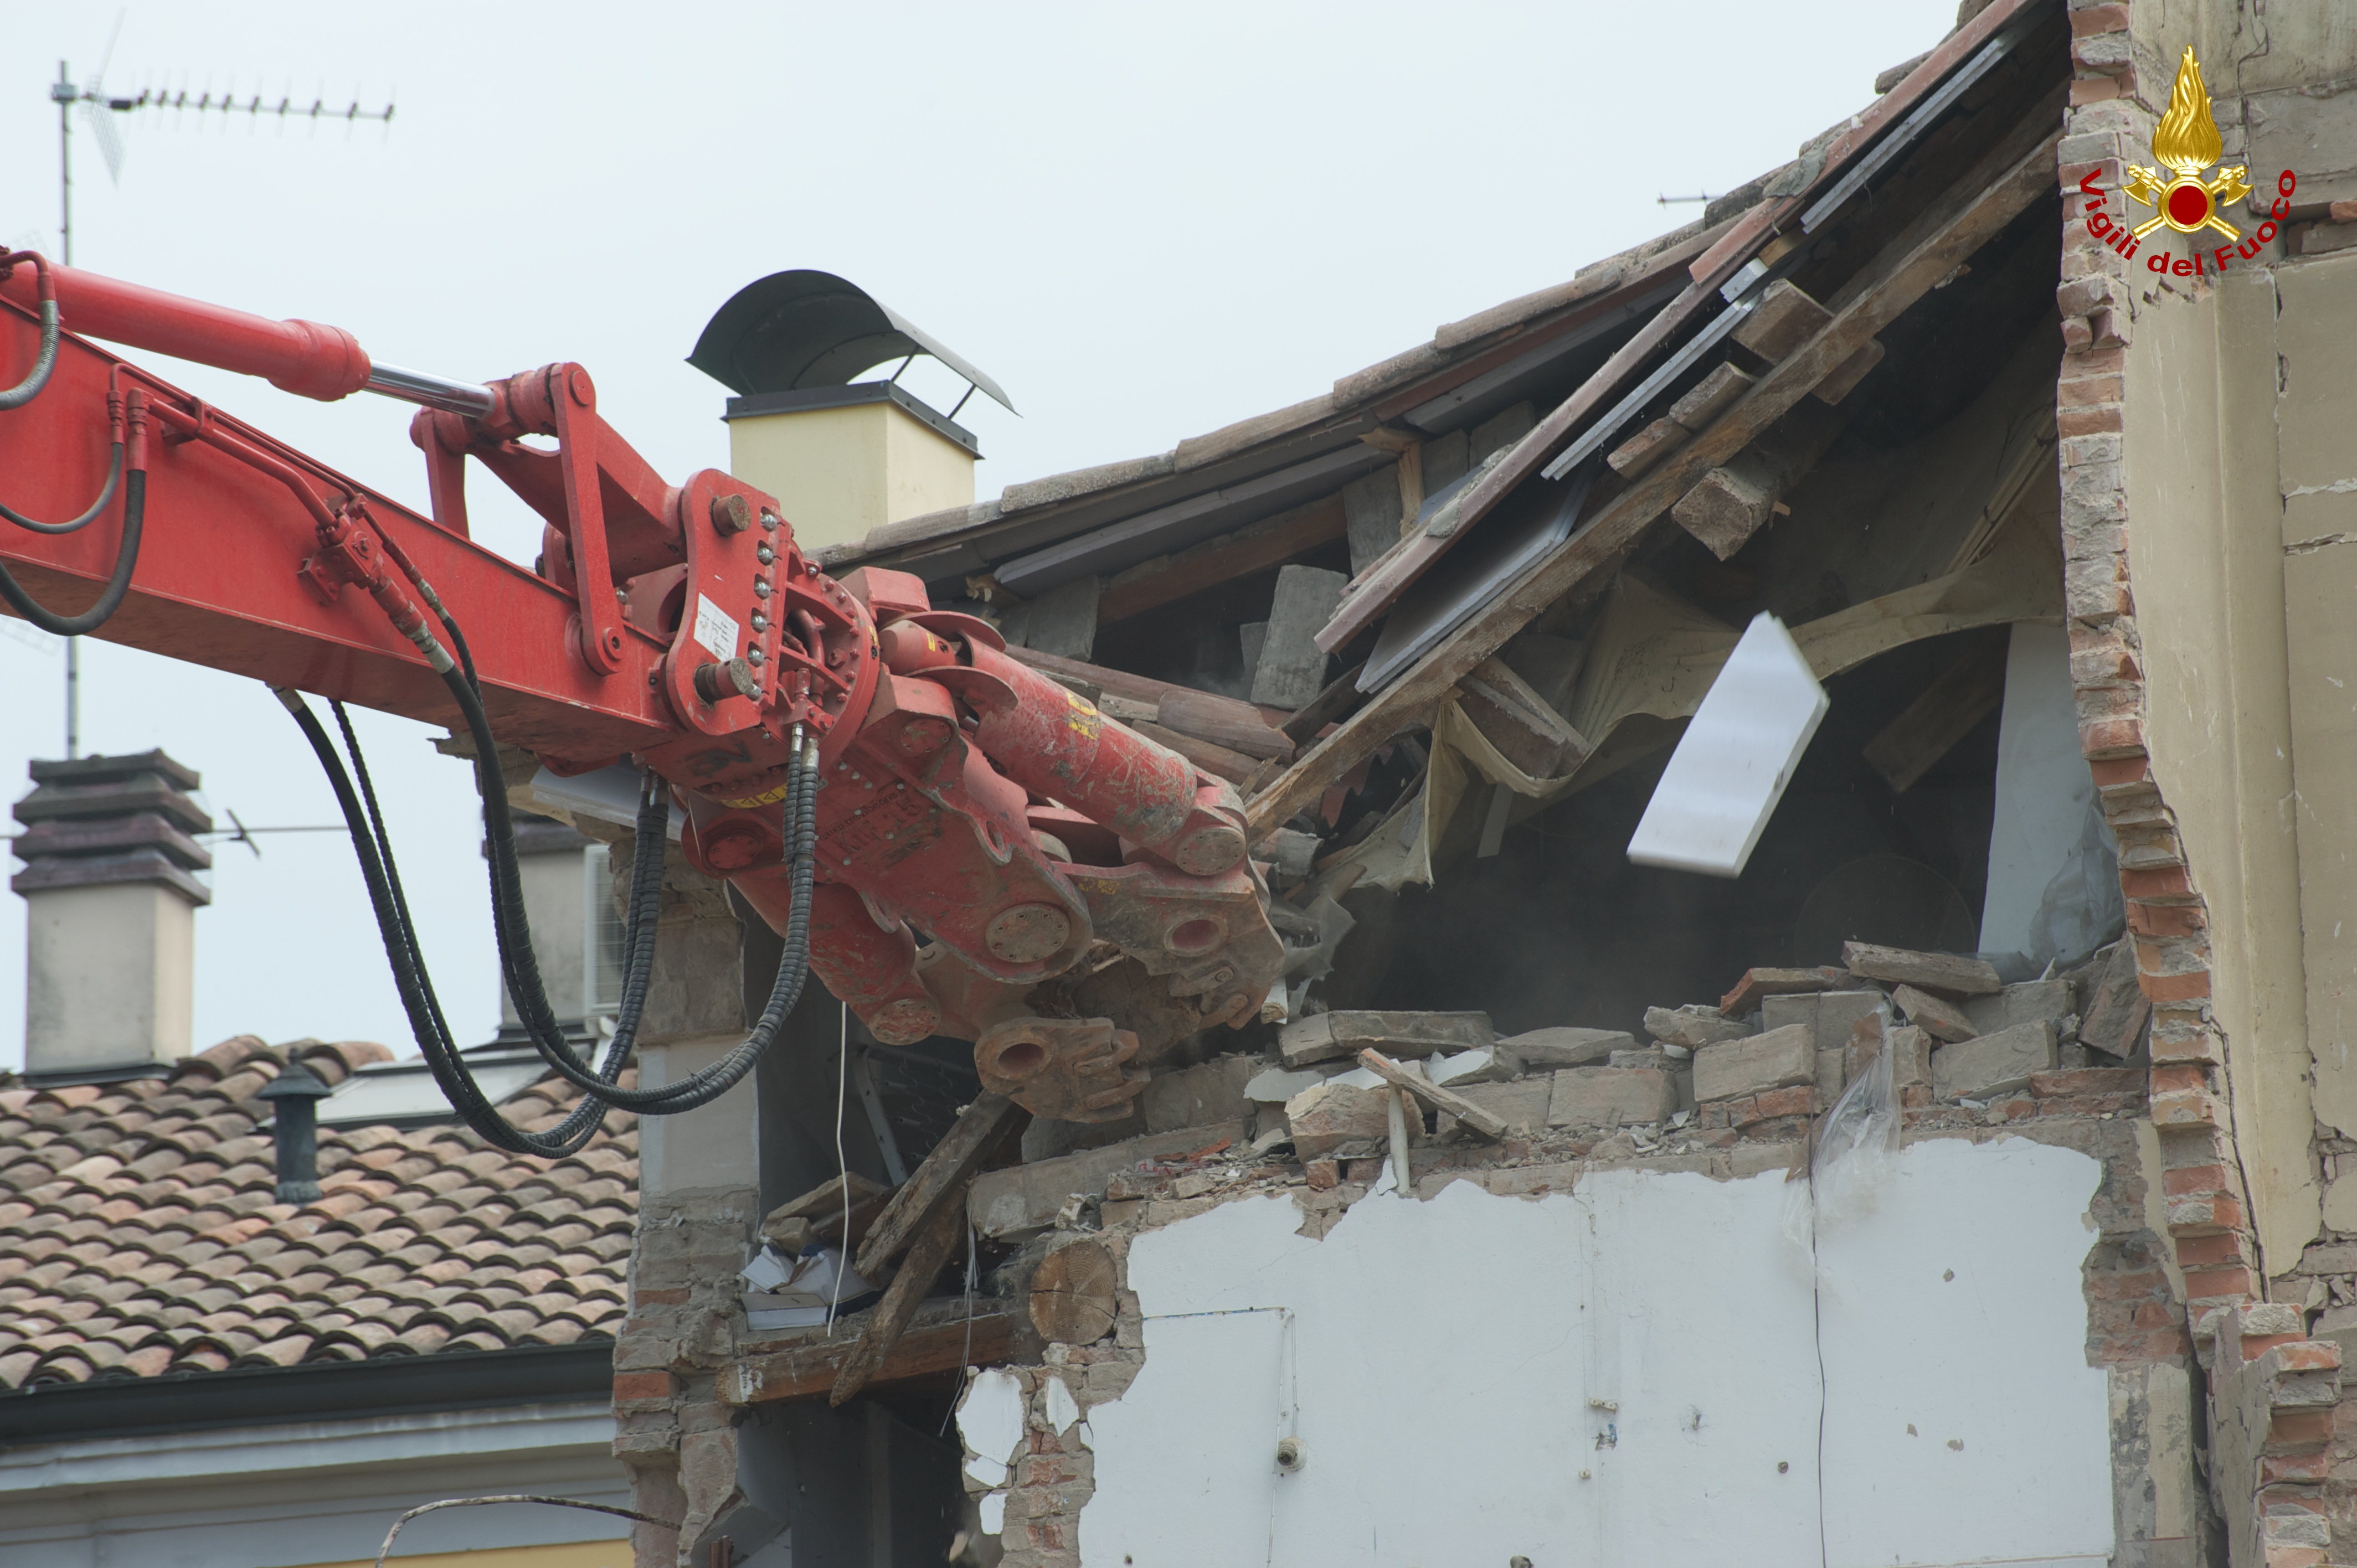 Demolizione abitazione in centro a Cavezzo (MO), tramite mezzo speciale VvF Belluno.